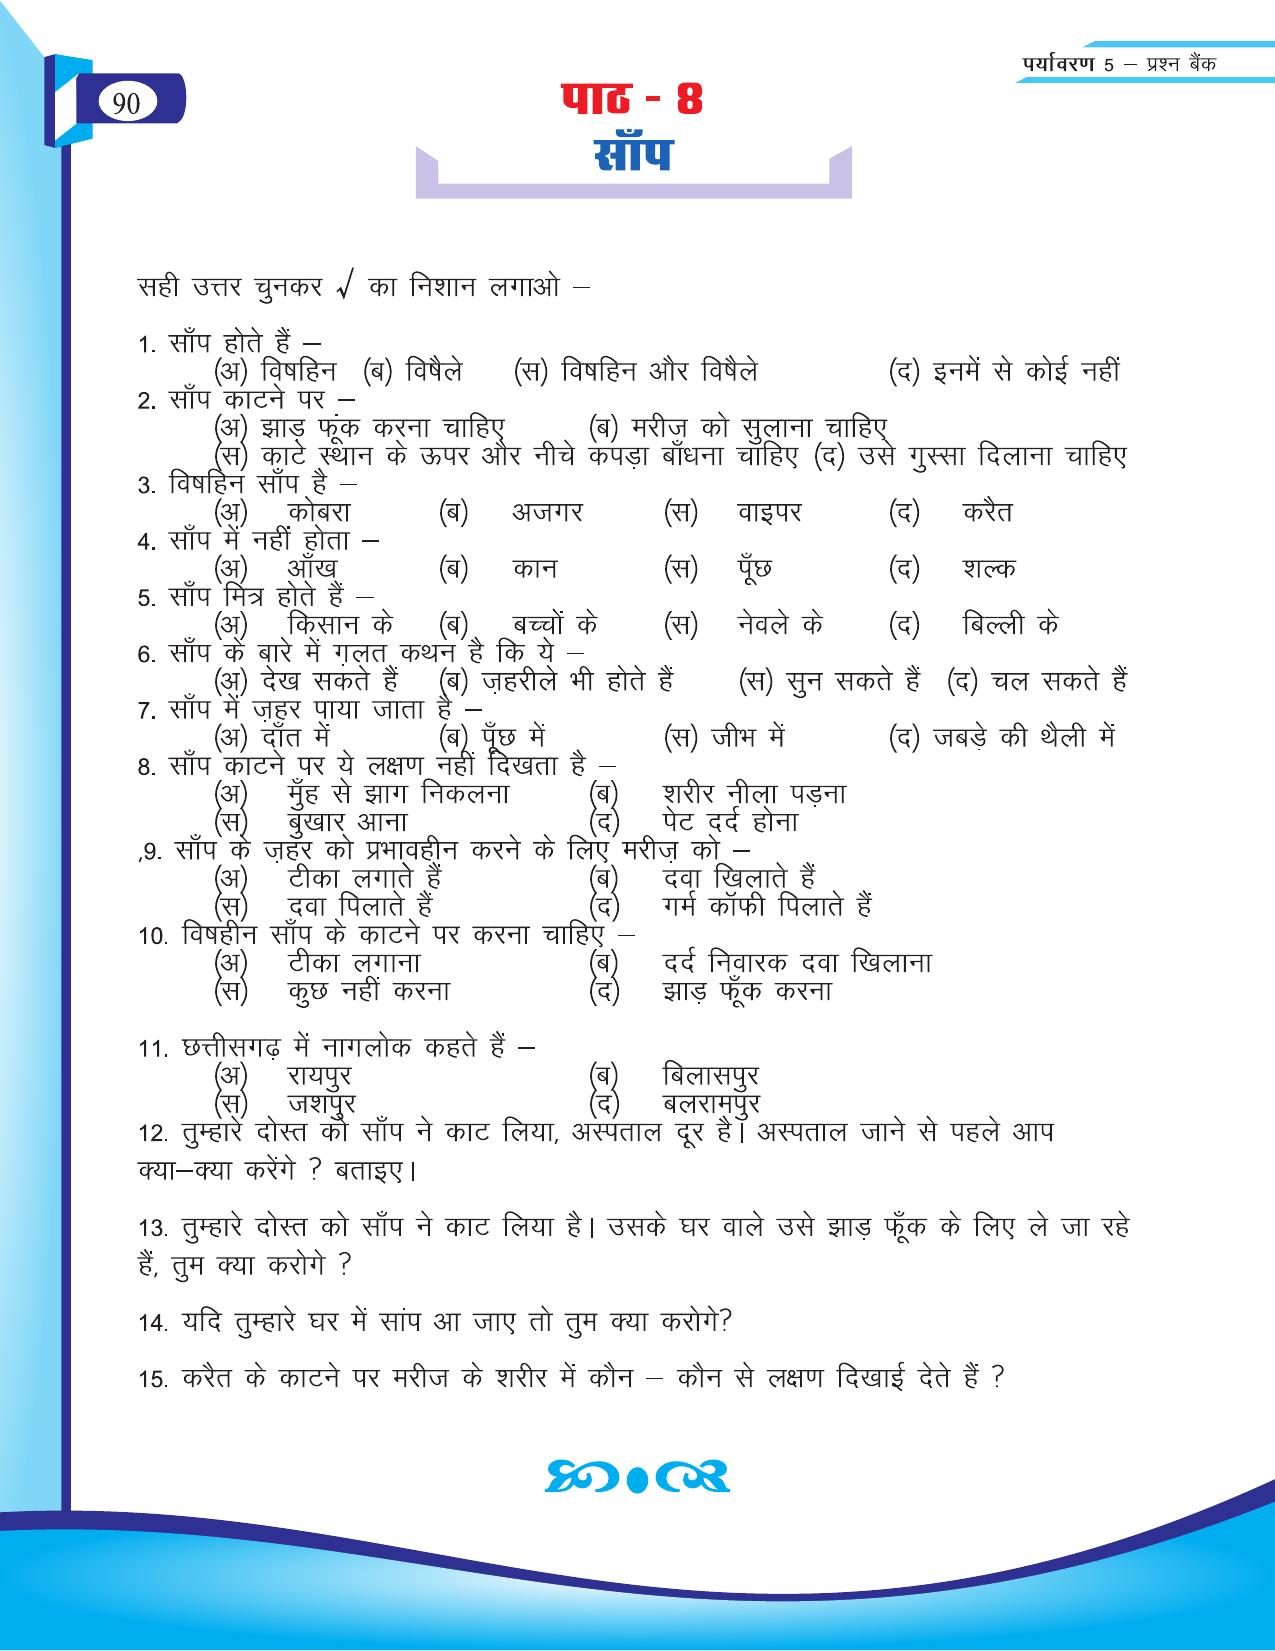 Chhattisgarh Board Class 5 EVS Question Bank 2015-16 - Page 16